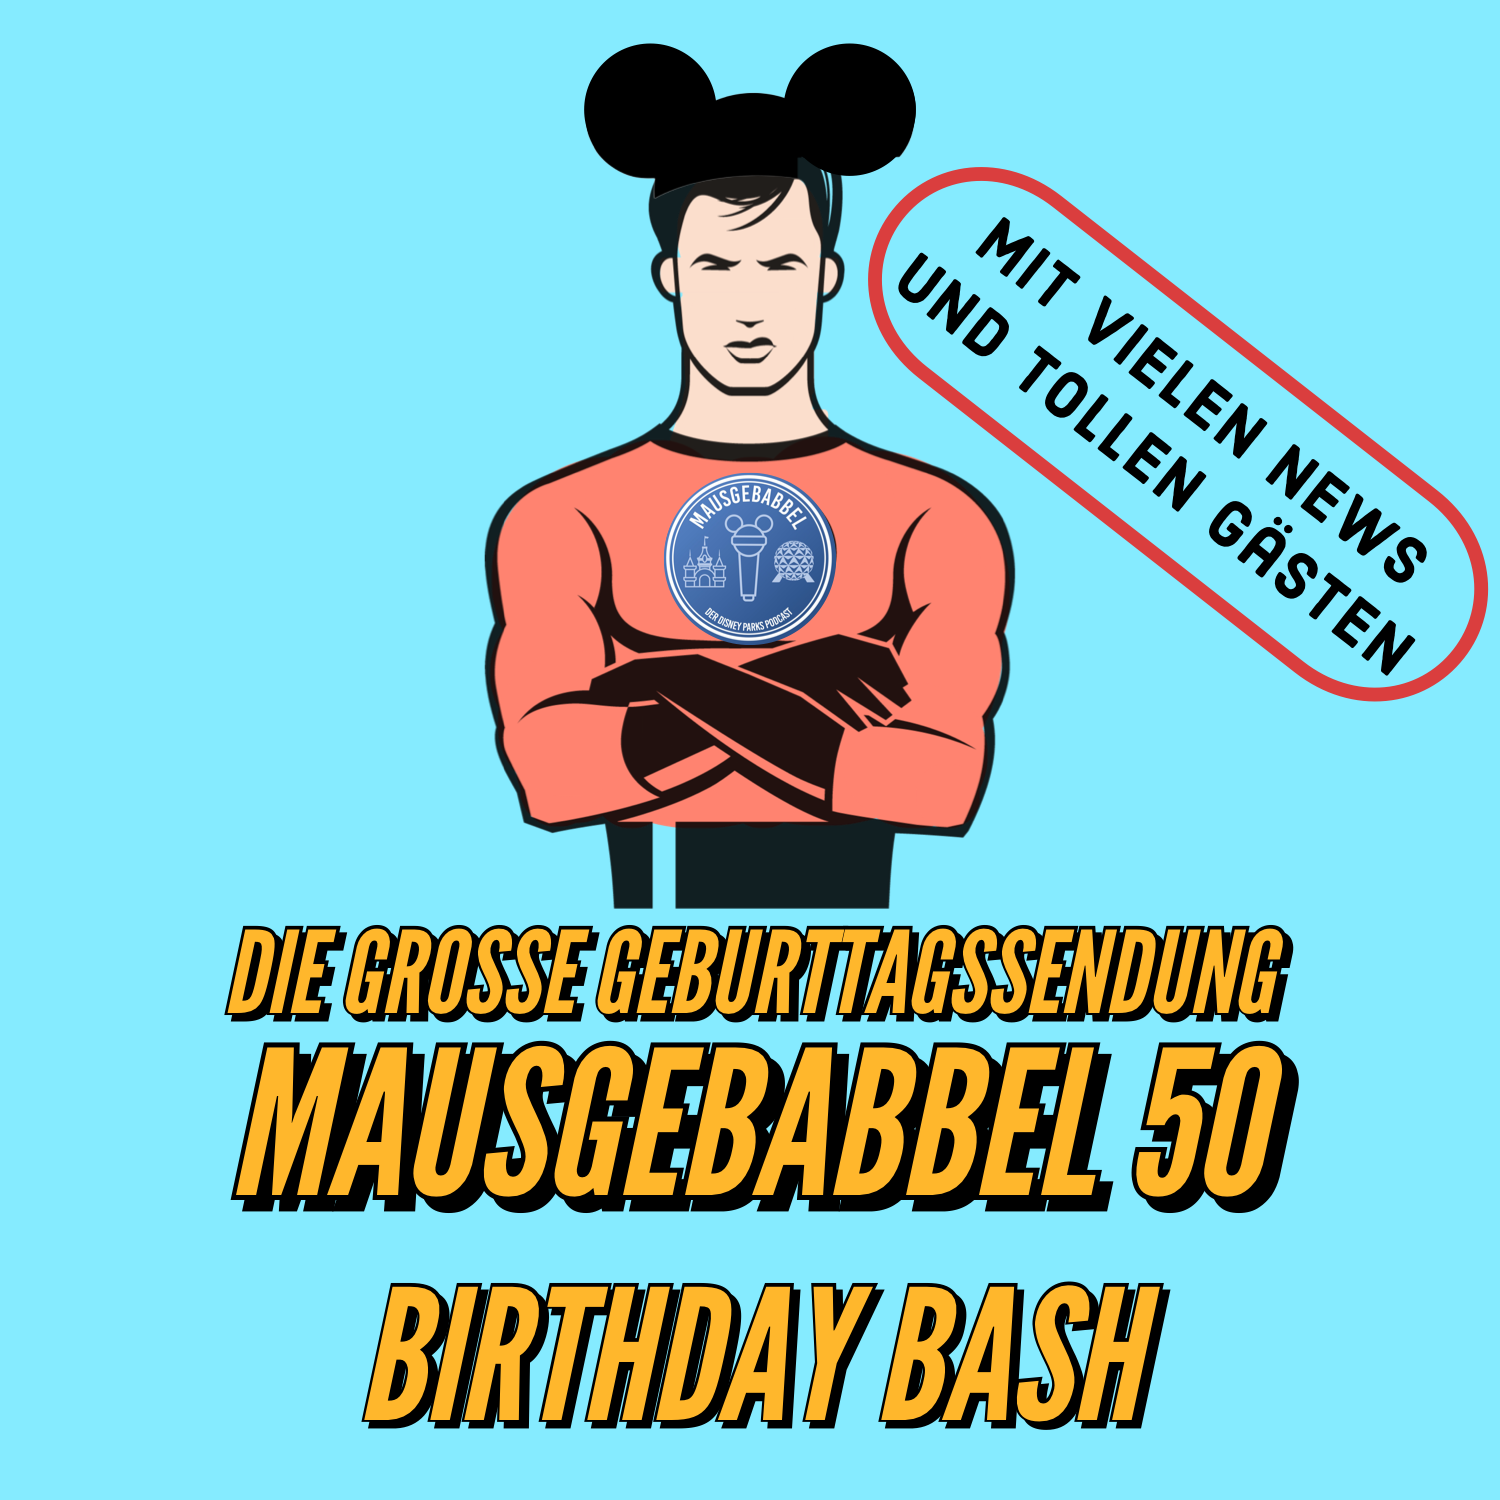 Mausgebabbel 50 - die große Geburtstagssendung mit vielen Disney Parks News und tollen Gästen 3